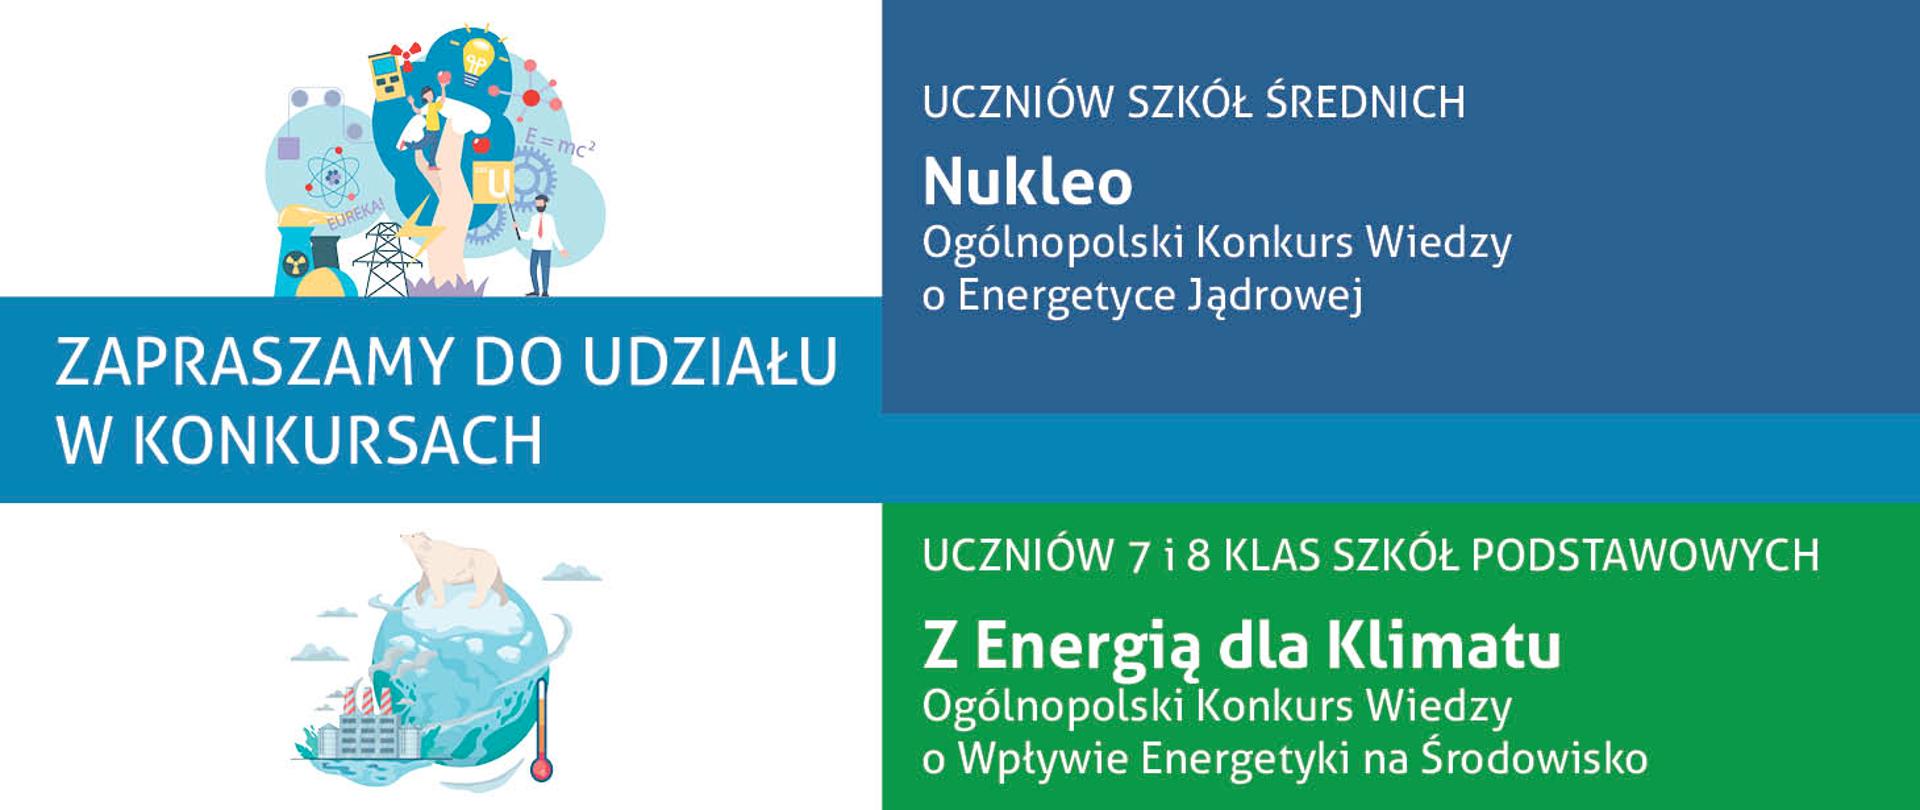 Konkursy dla uczniów "Nukleo" oraz "Z Energią dla Klimatu"